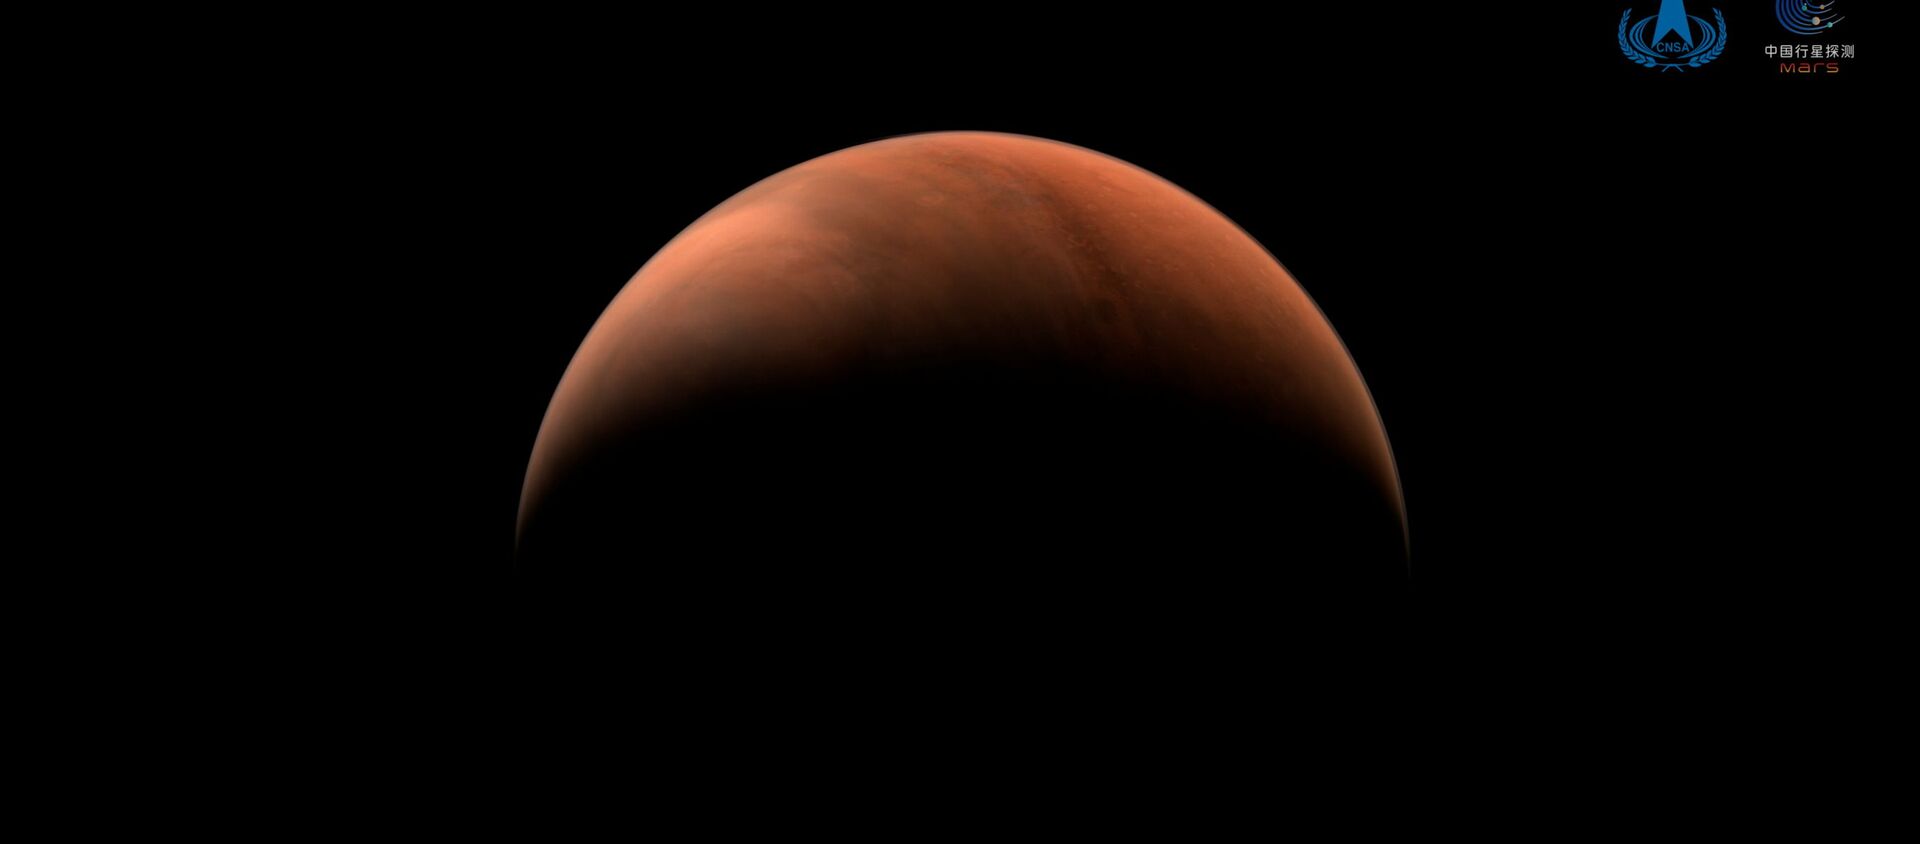 Ảnh chụp sao Hỏa do tàu thăm dò vũ trụ Thiên vấn-1 thực hiện. - Sputnik Việt Nam, 1920, 28.03.2021